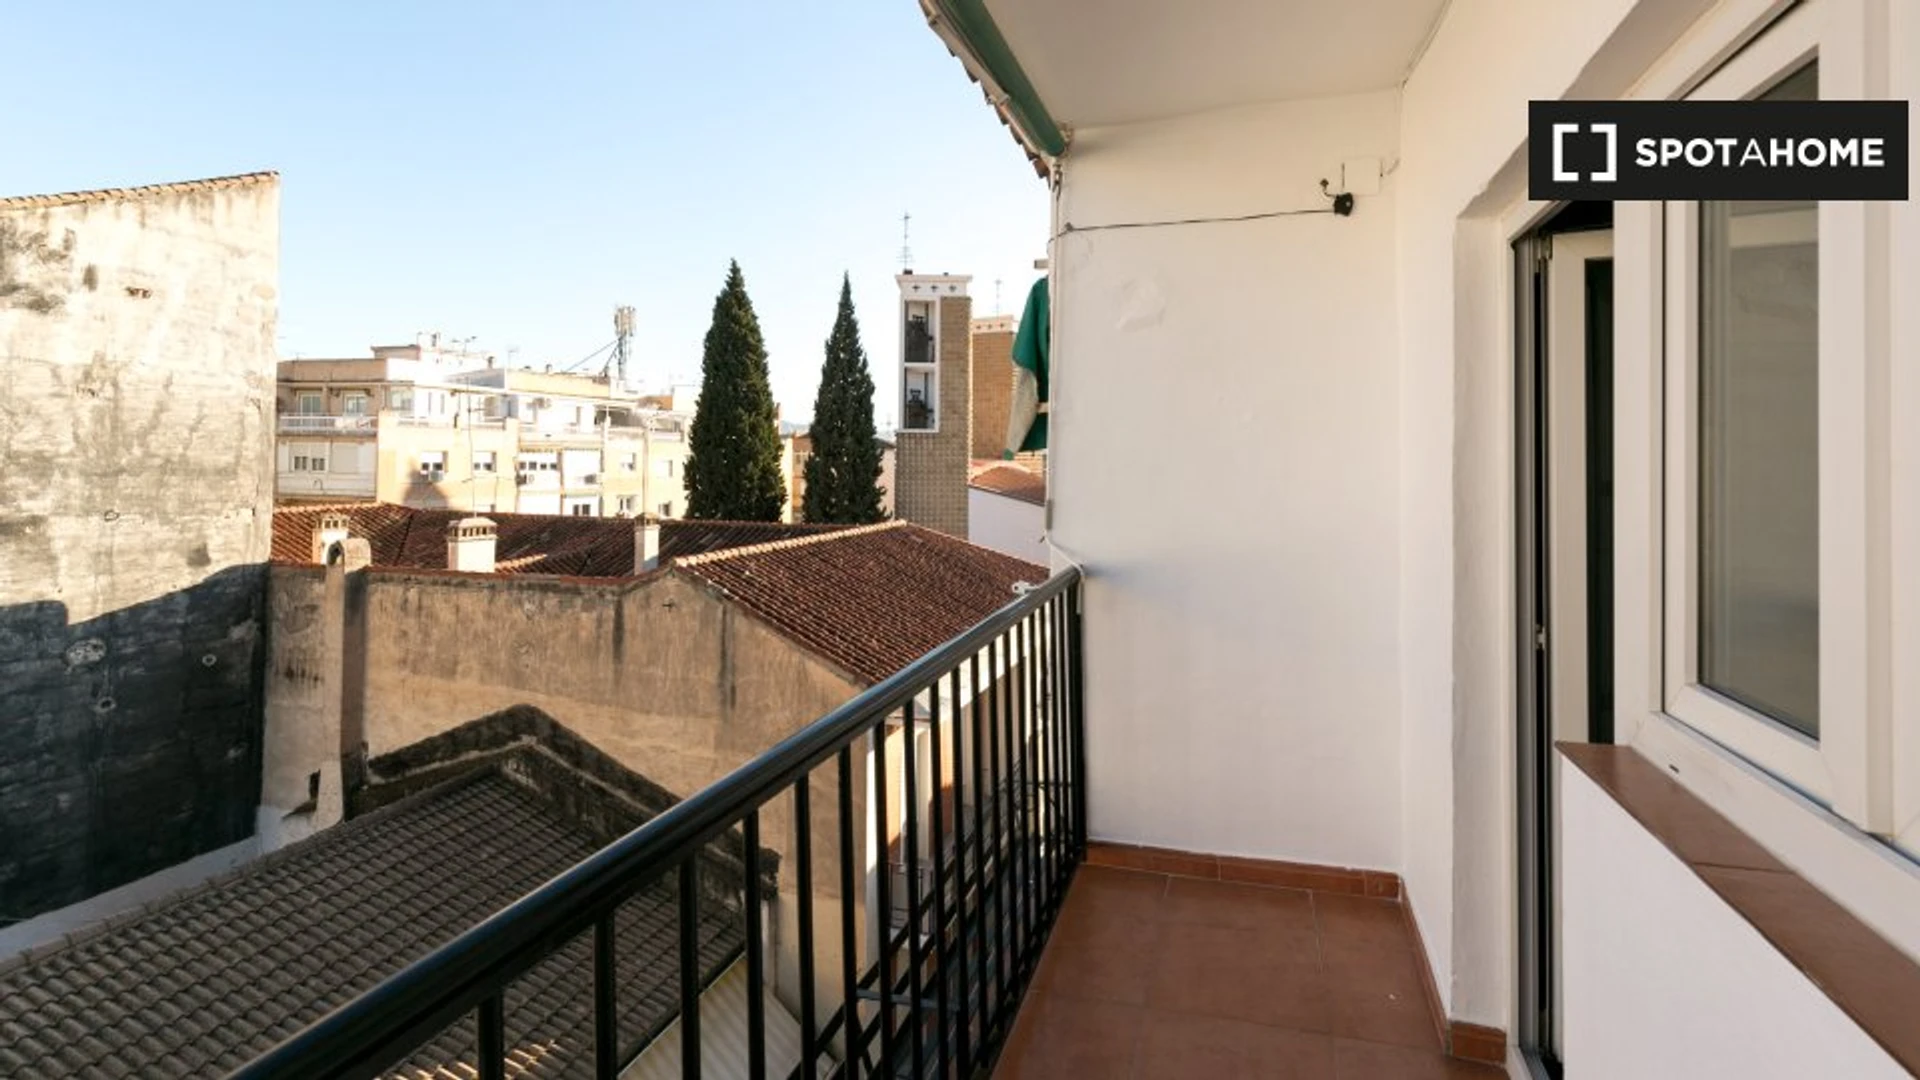 Stanze affittabili mensilmente a Granada